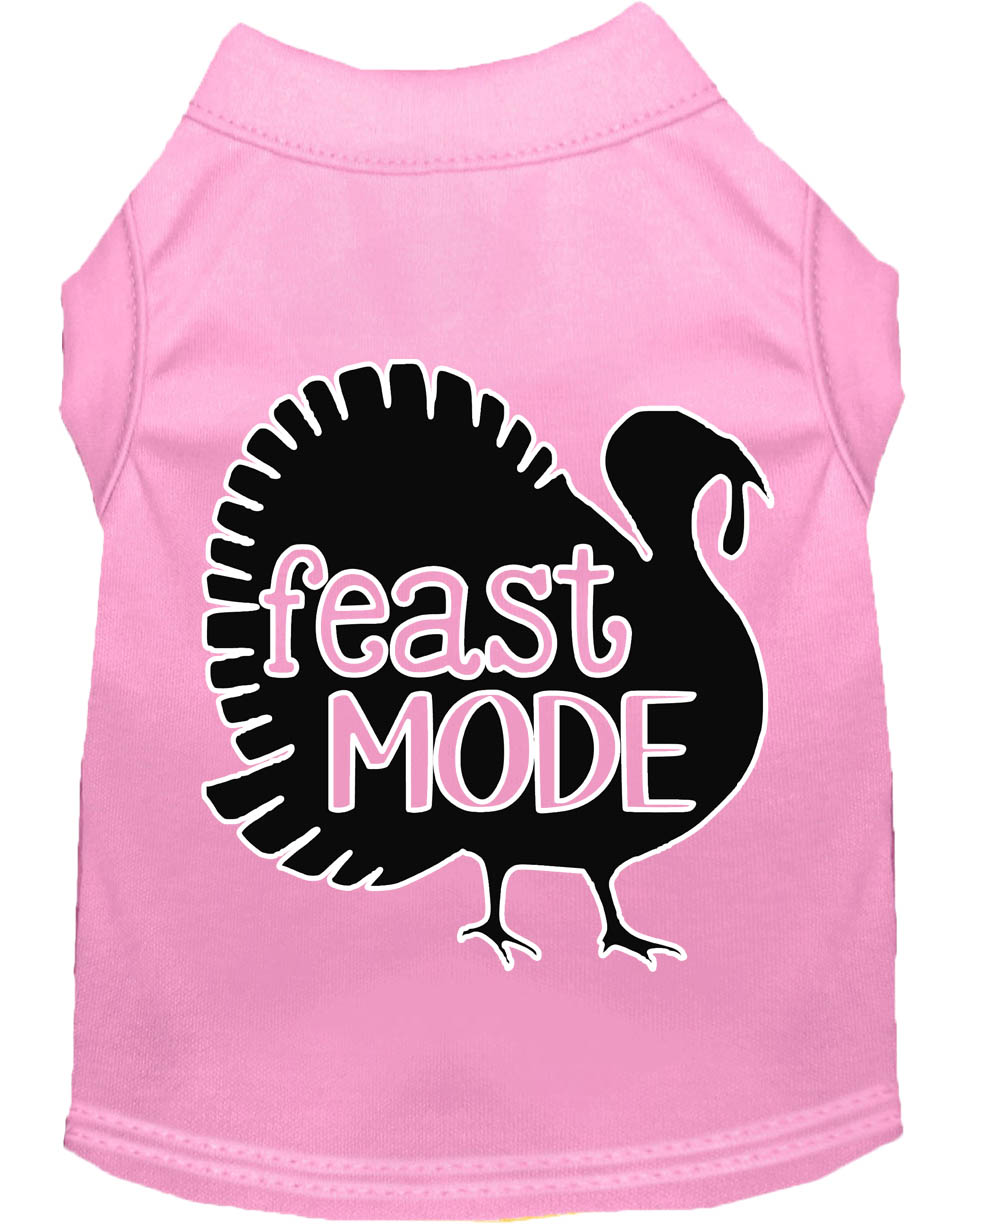 Feast Mode Screen Print Dog Shirt Light Pink XS